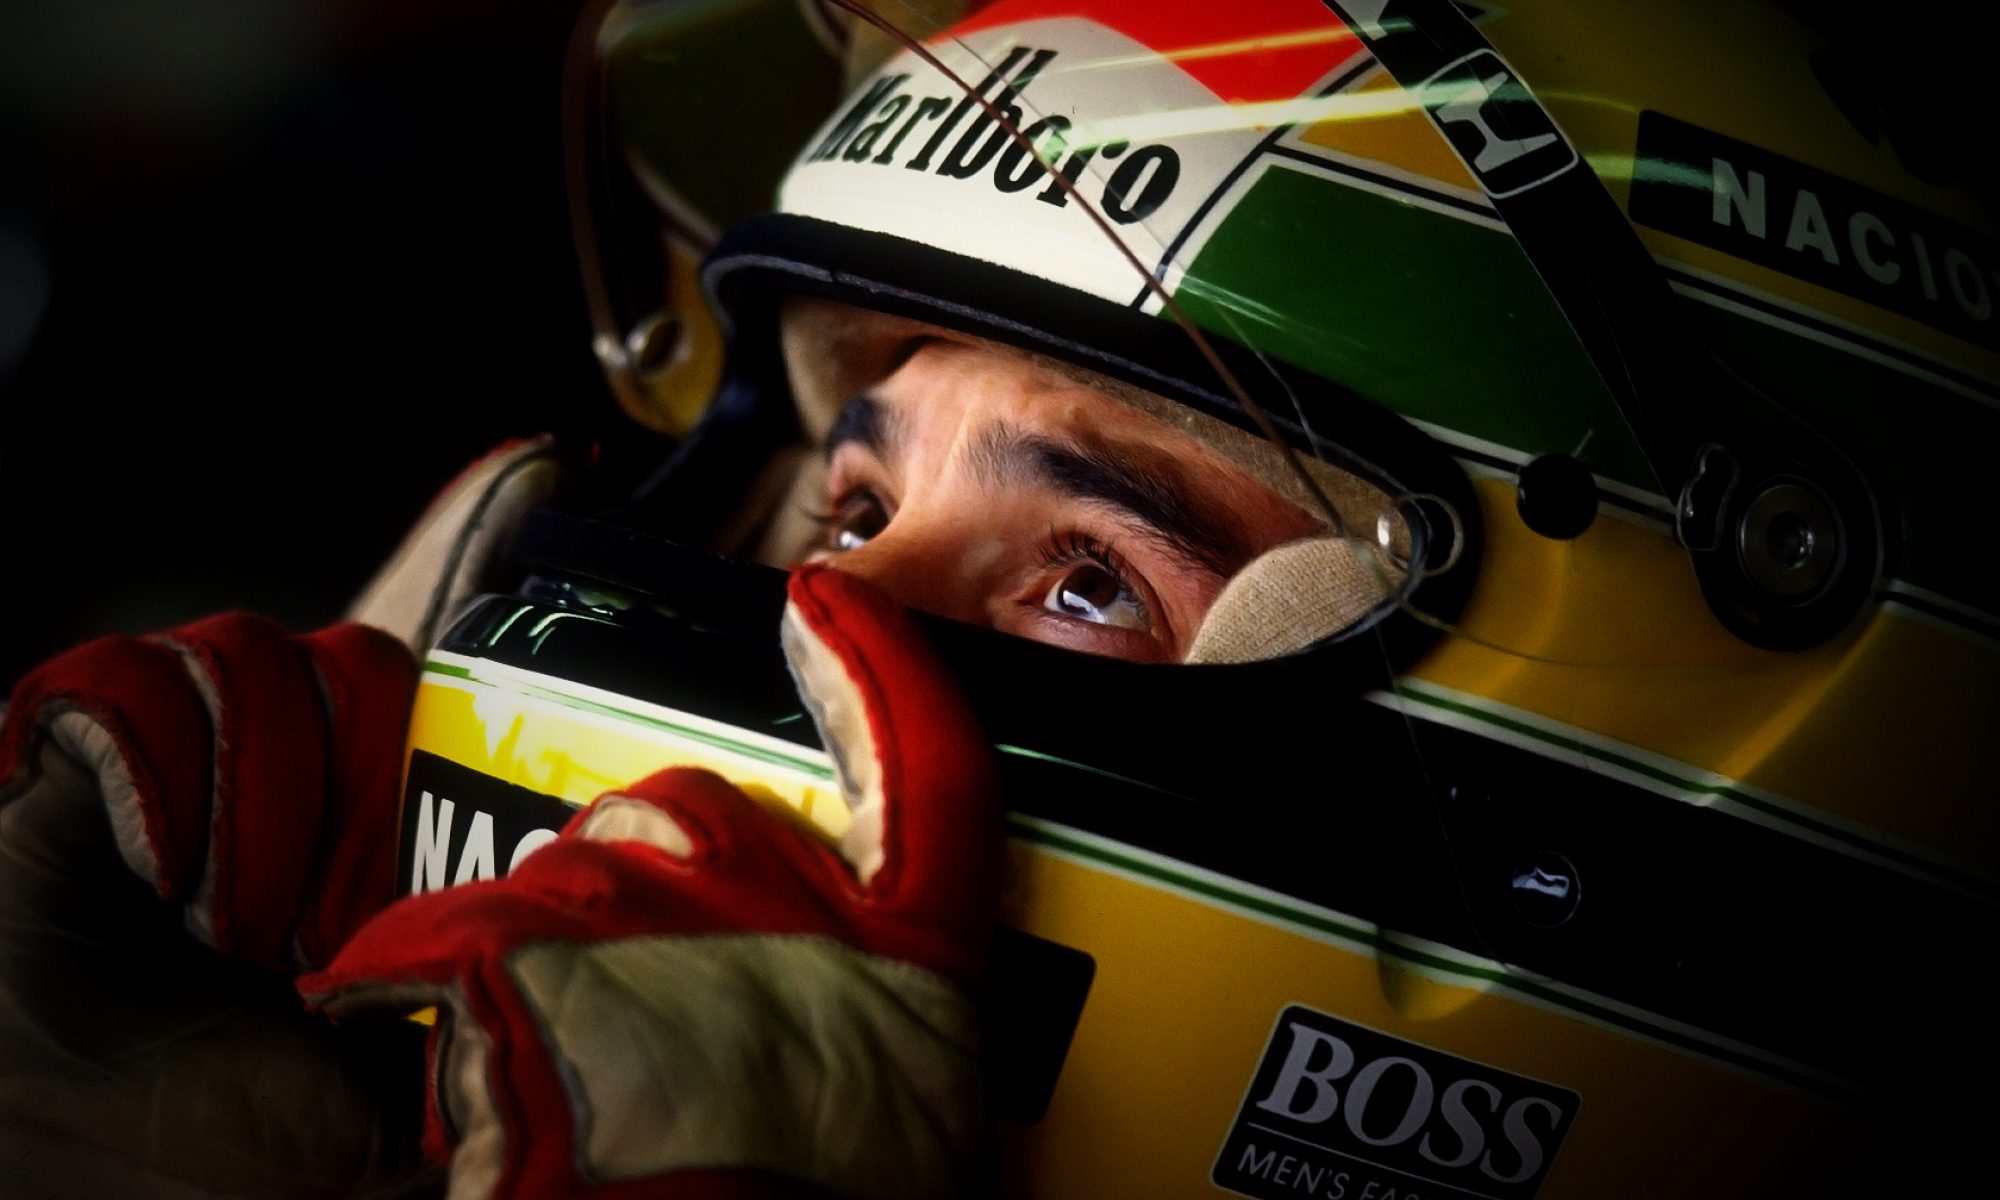 Melhores papéis de parede de Ayrton Senna para tela do telefone